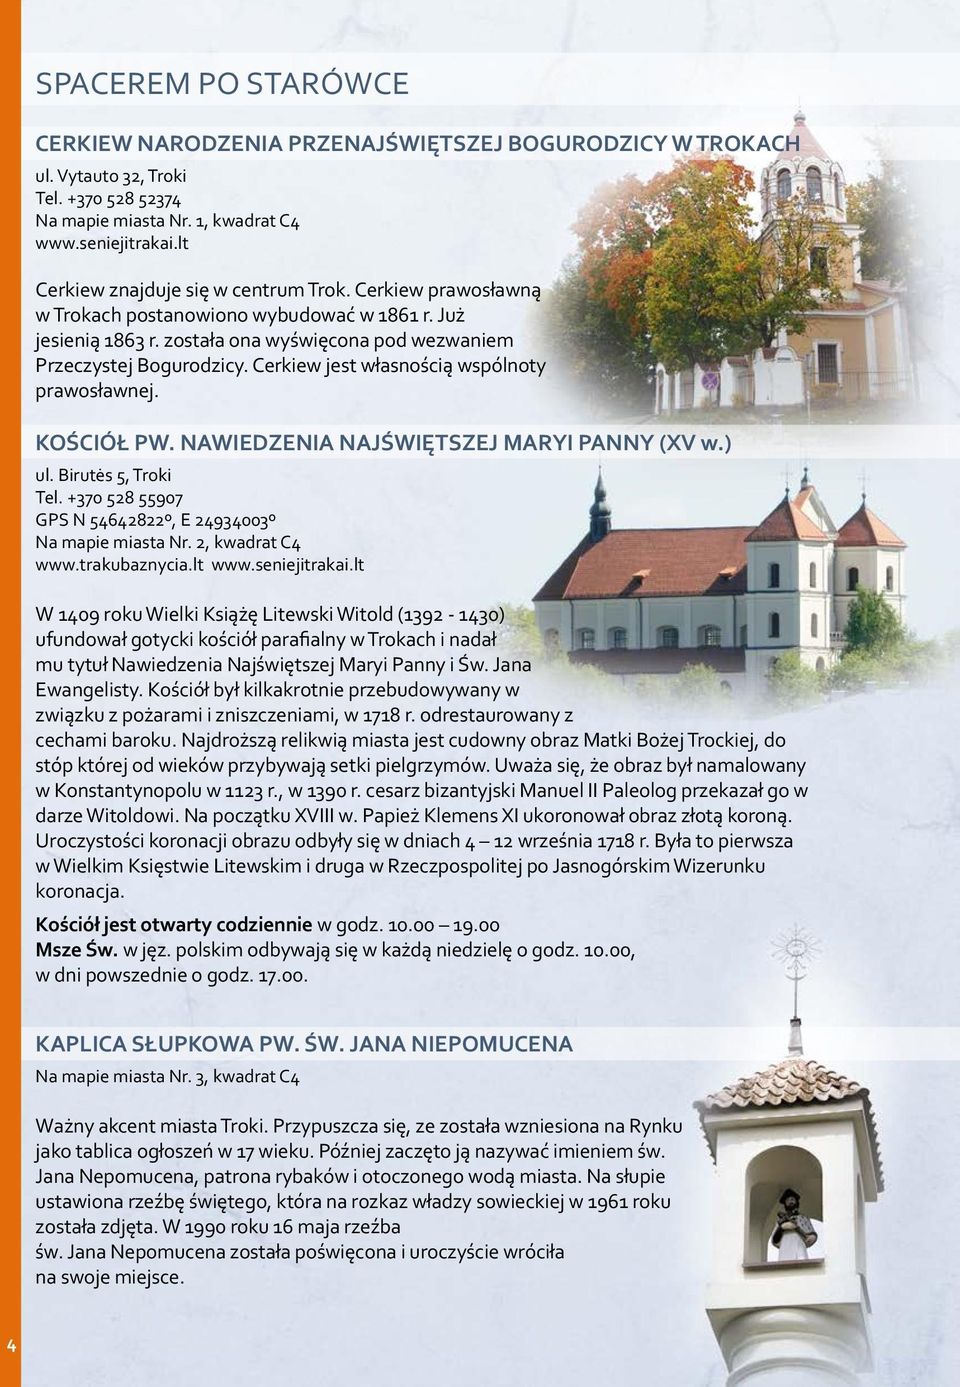 Cerkiew jest własnością wspólnoty prawosławnej. KOŚCIÓŁ PW. NAWIEDZENIA NAJŚWIĘTSZEJ MARYI PANNY (XV w.) ul. Birutės 5, Troki Tel. +370 528 55907 GPS N 54642822º, E 24934003º Na mapie miasta Nr.